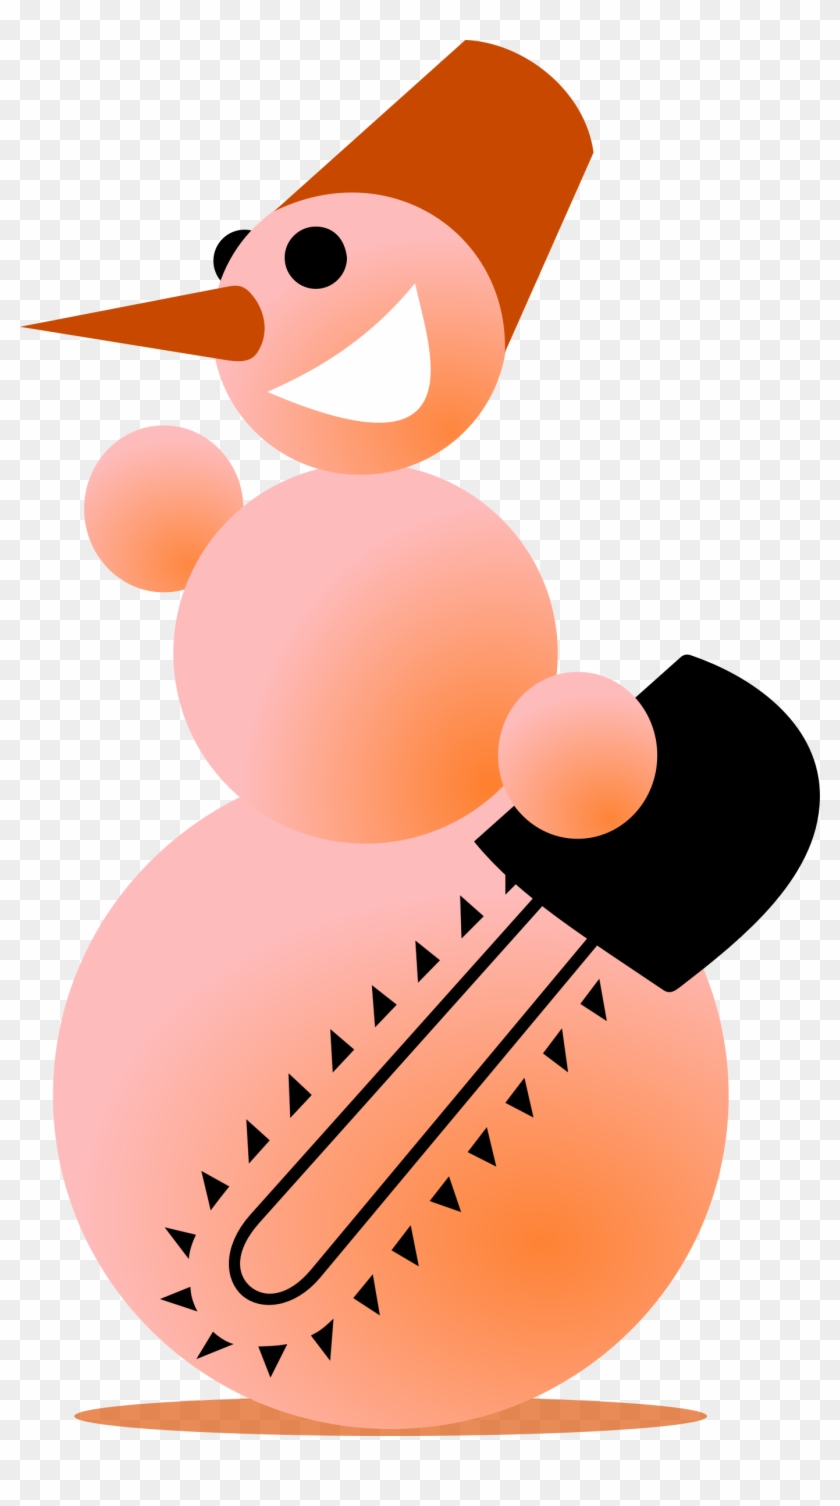 Snowman-butcher By Rones - Snowman-butcher By Rones #309232